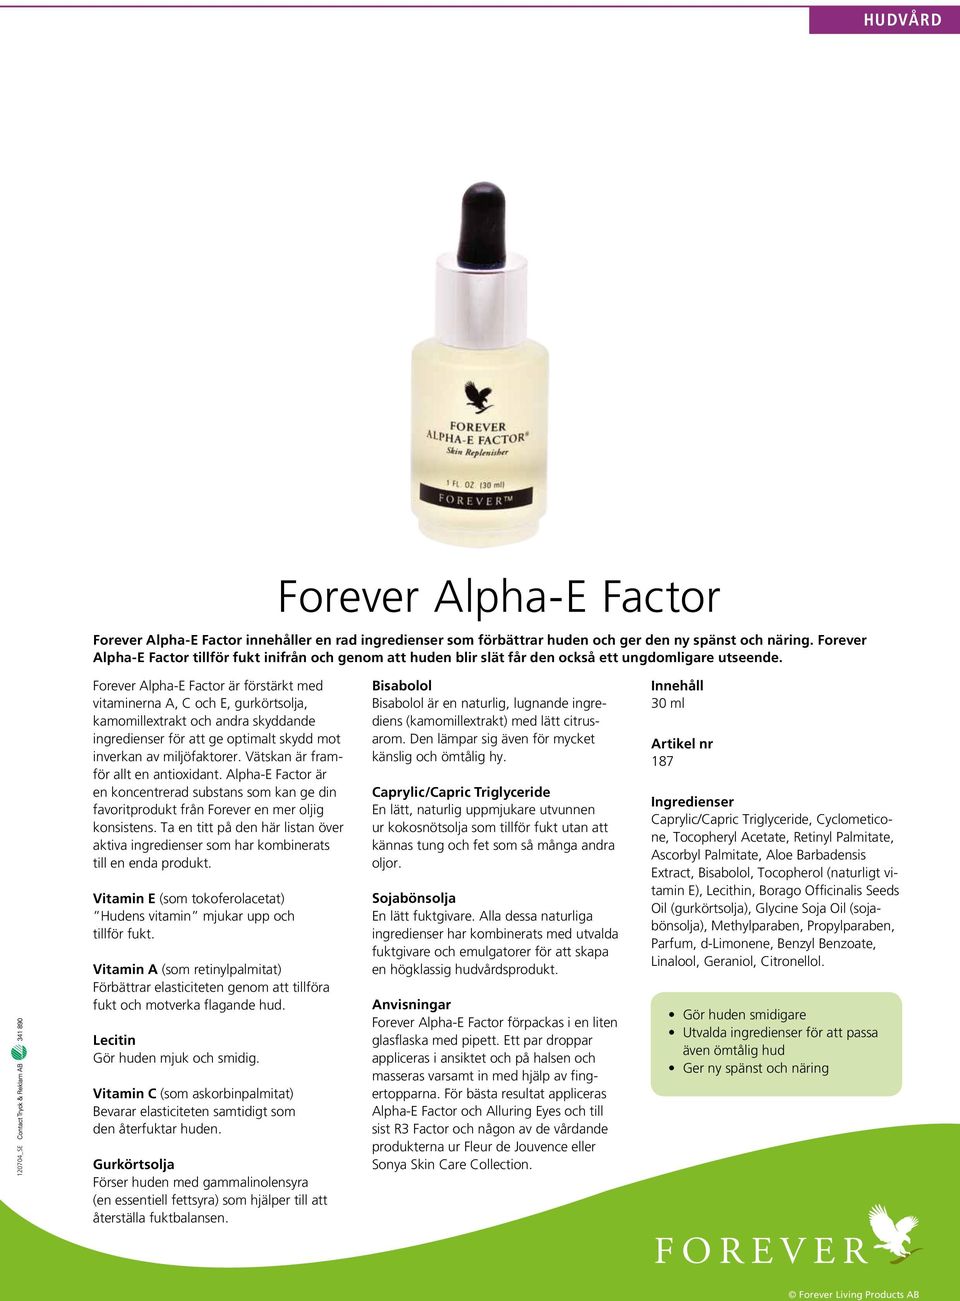 Forever Alpha-E Factor är förstärkt med vitaminerna A, C och E, gurkörtsolja, kamomillextrakt och andra skyddande ingredienser för att ge optimalt skydd mot inverkan av miljöfaktorer.